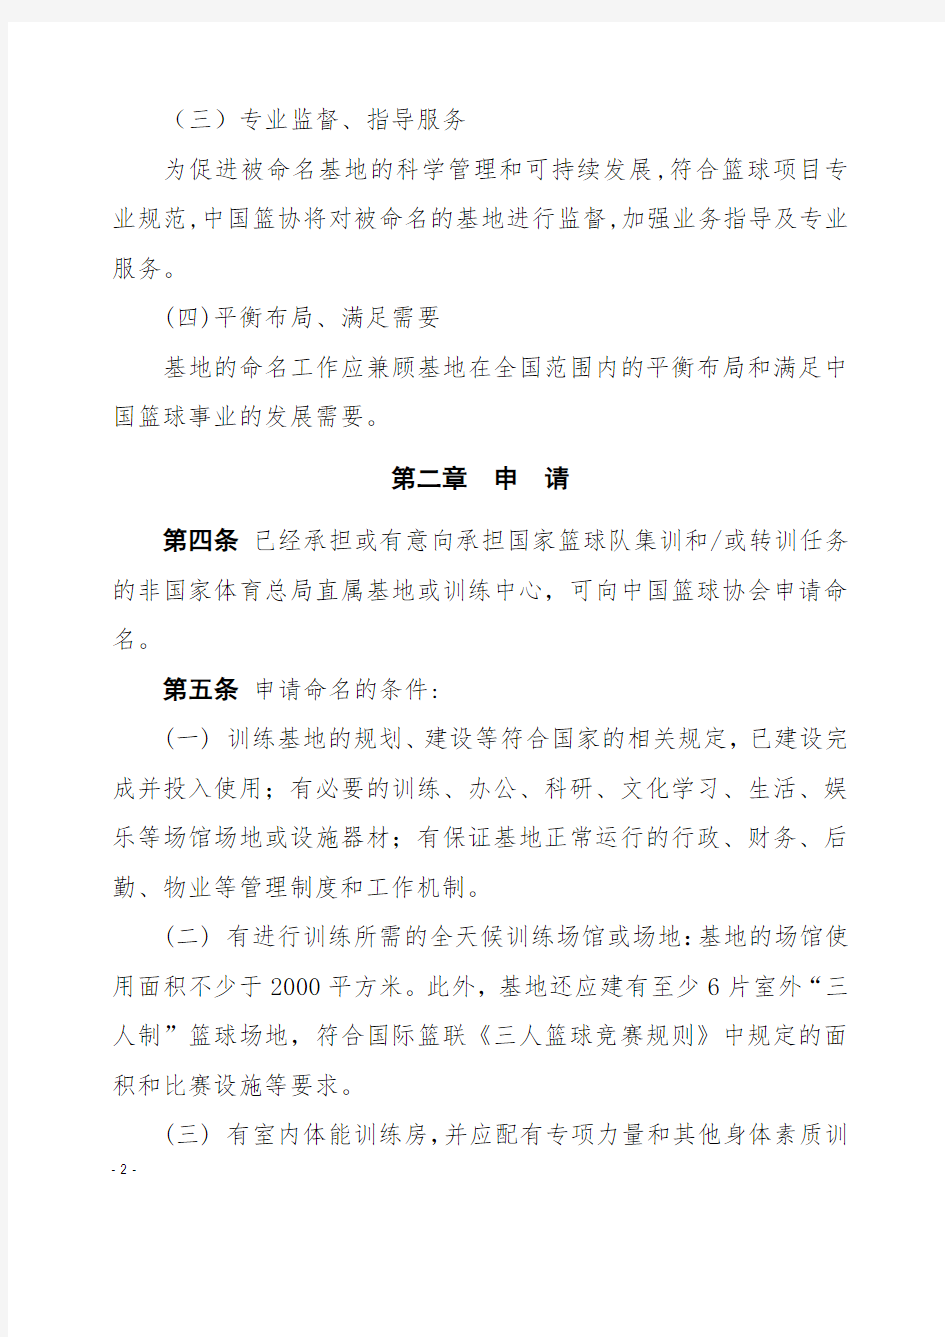 中国篮球协会训练基地(中心)命名管理办法